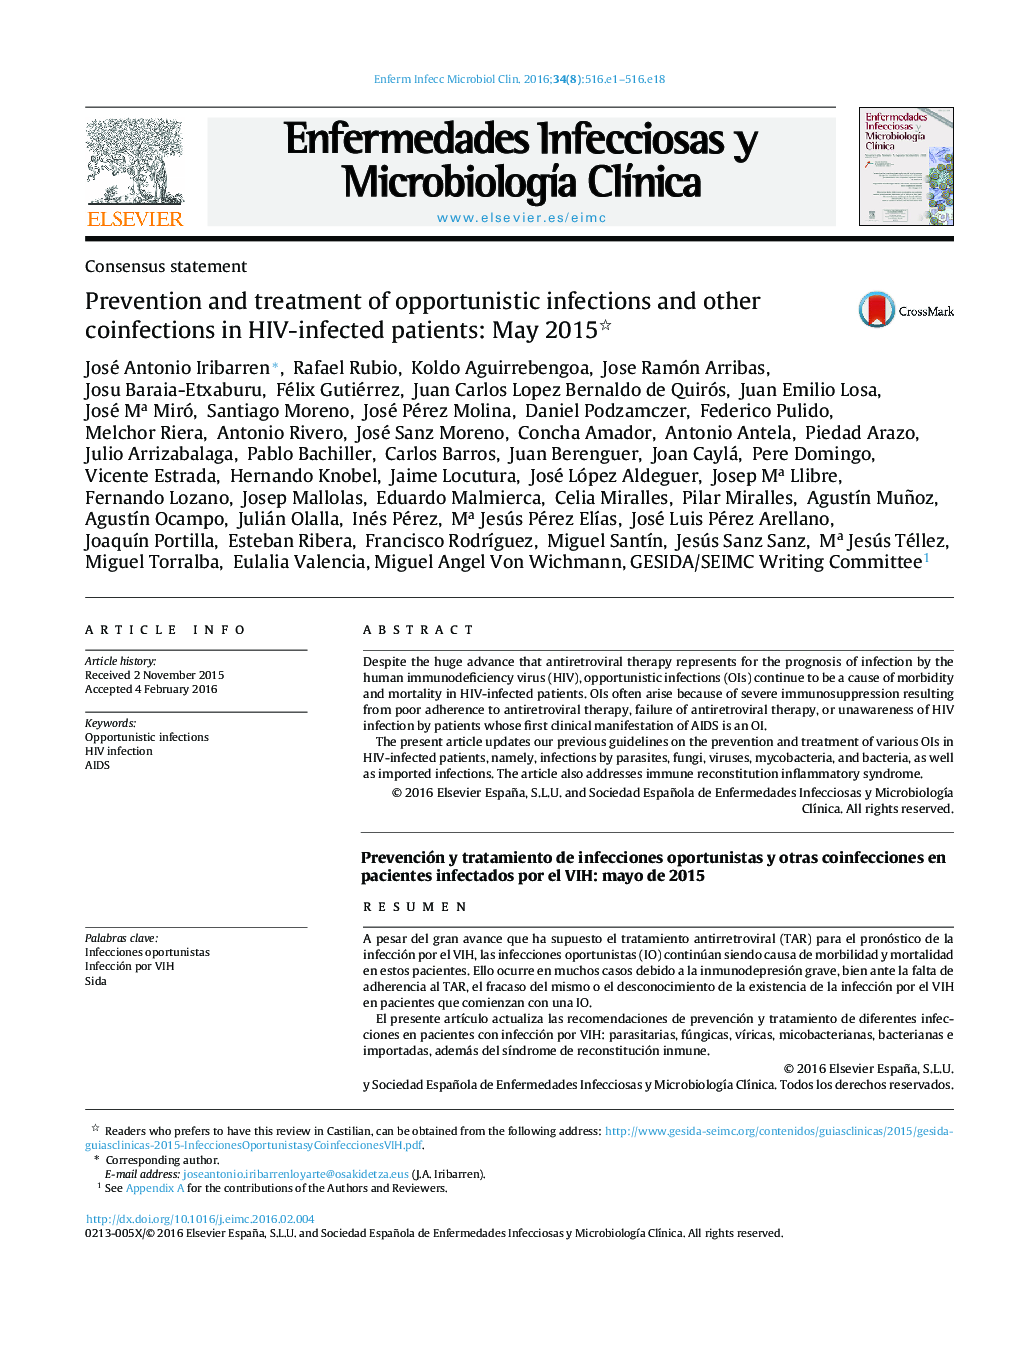 پیشگیری و درمان عفونت های فرصت طلب و سایر عفونت های همراه در بیماران آلوده به ویروس: مه 2015 